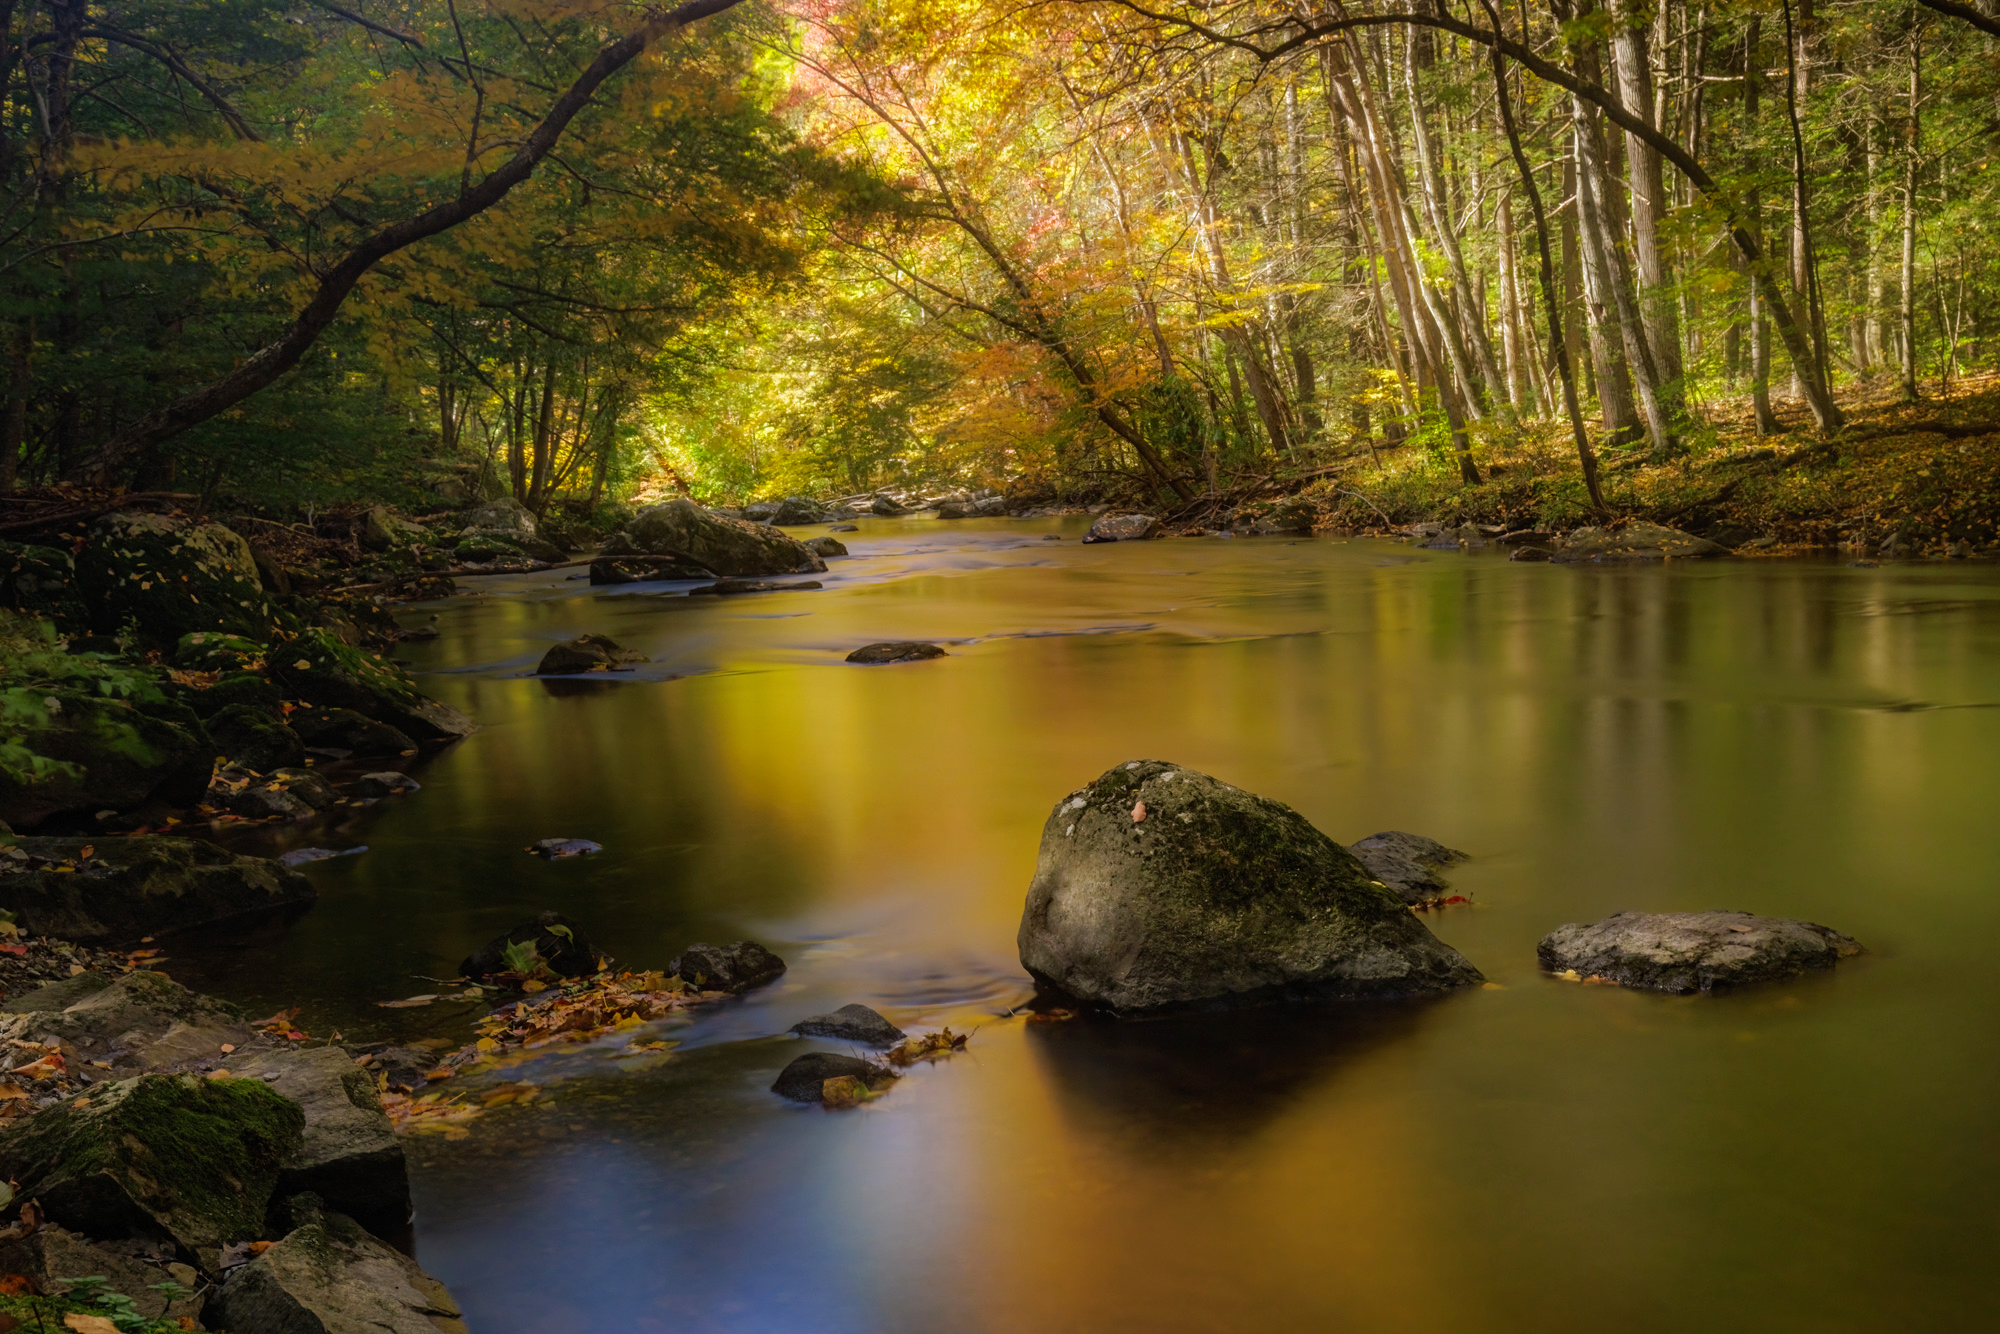 Fall river scene along Ken Lockwood Gorge, New Jersey - Autumn Glow